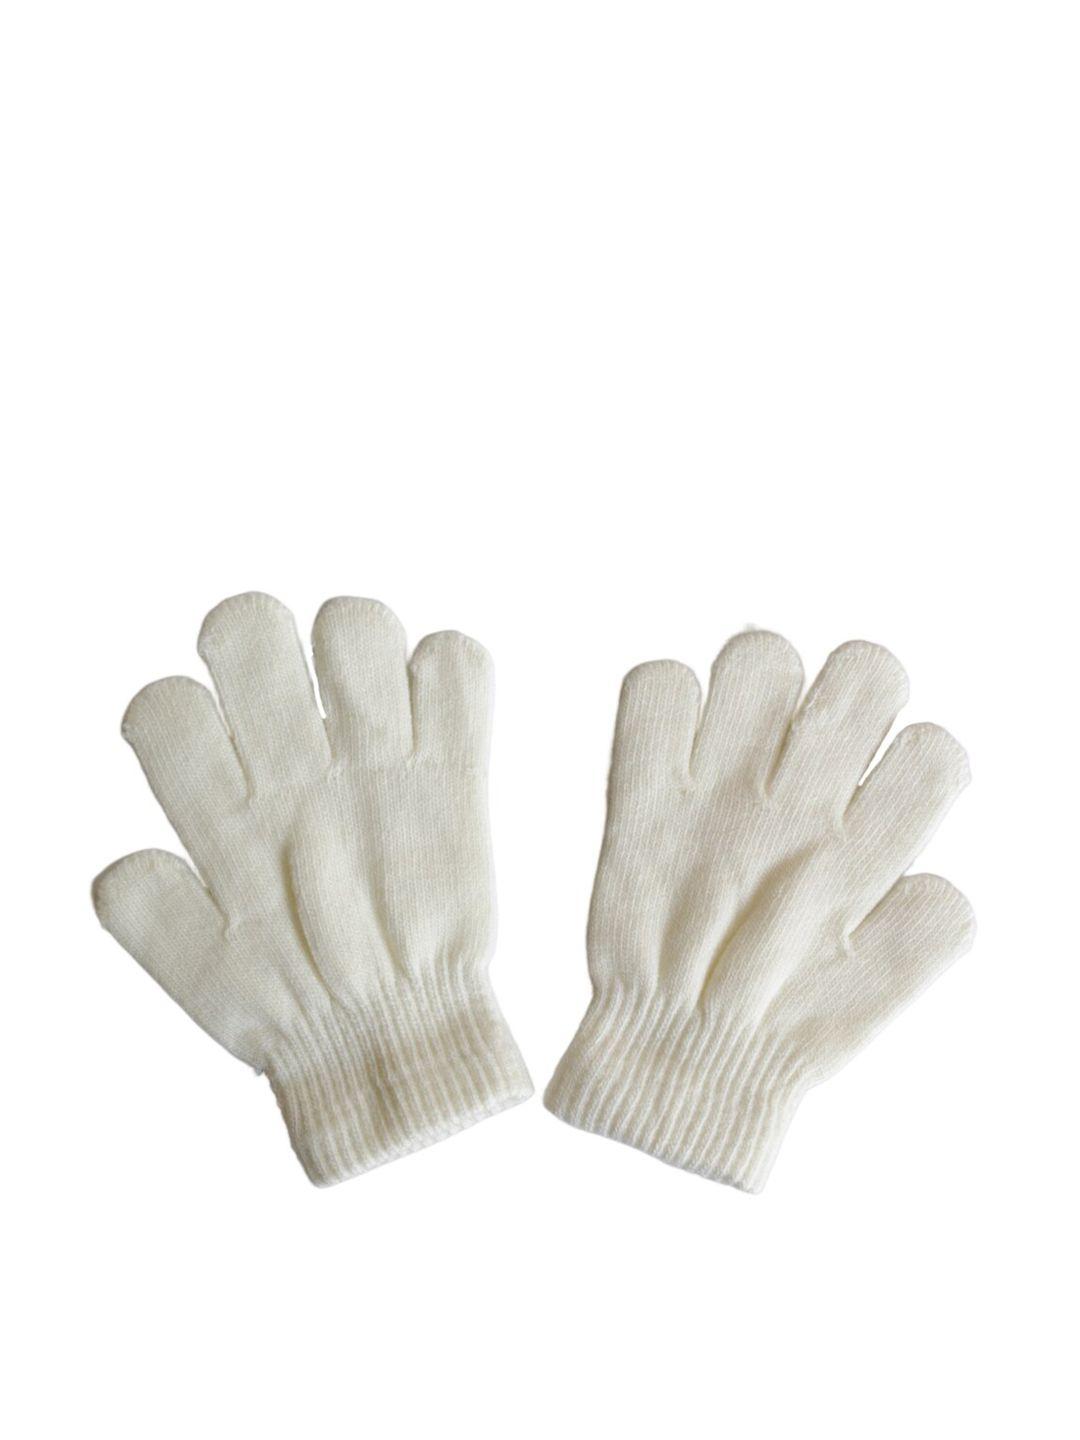 tipy tipy tap girls full finger woolen winter gloves